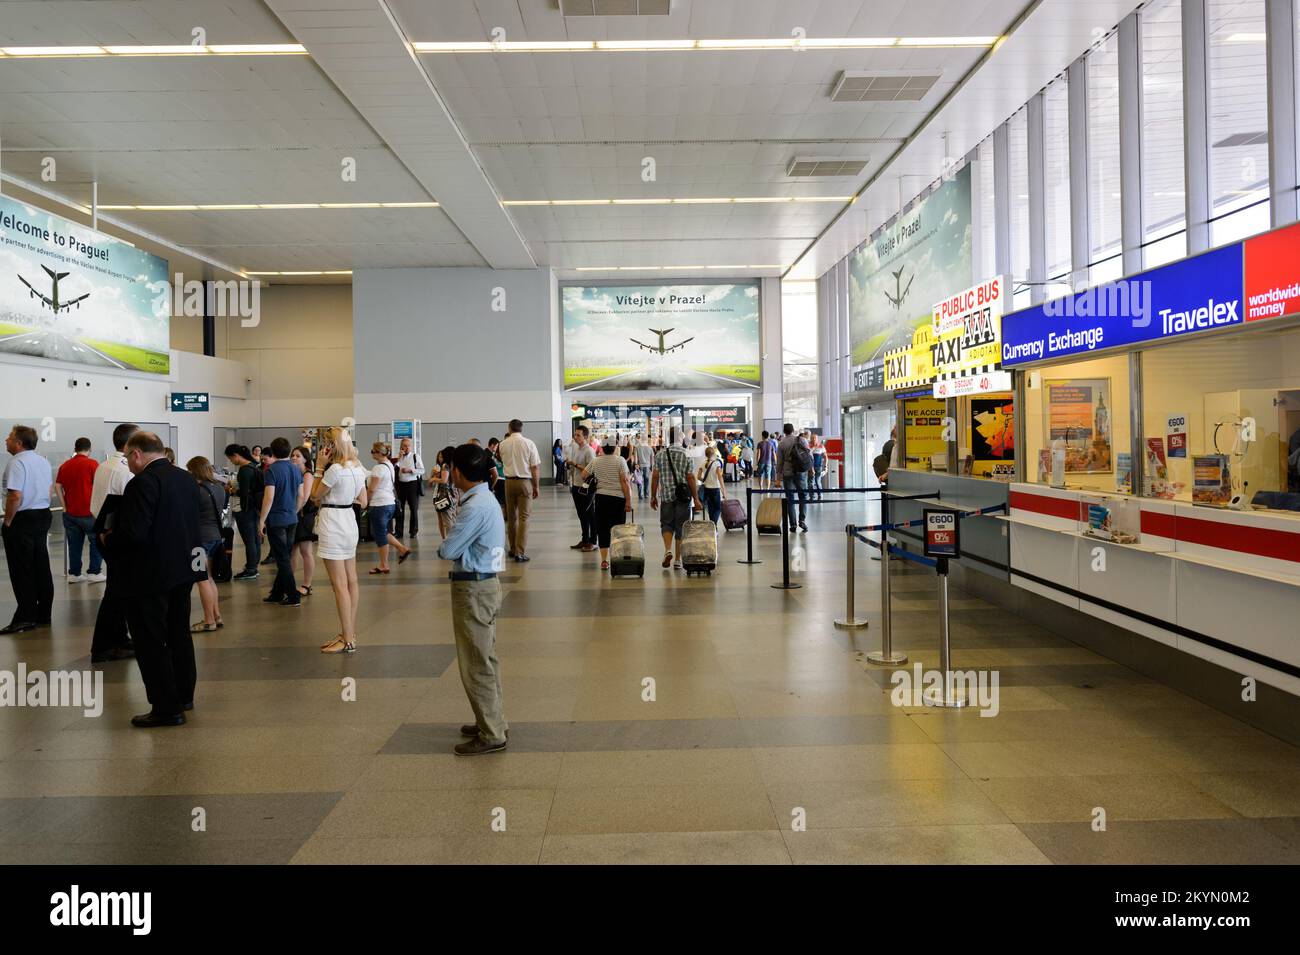 PRAG, TSCHECHISCHE REPUBLIK - 04. AUGUST 2015: flughafen von Prag Interior. Der internationale Flughafen von Prag ist der größte Flughafen der Tschechischen Republik Stockfoto